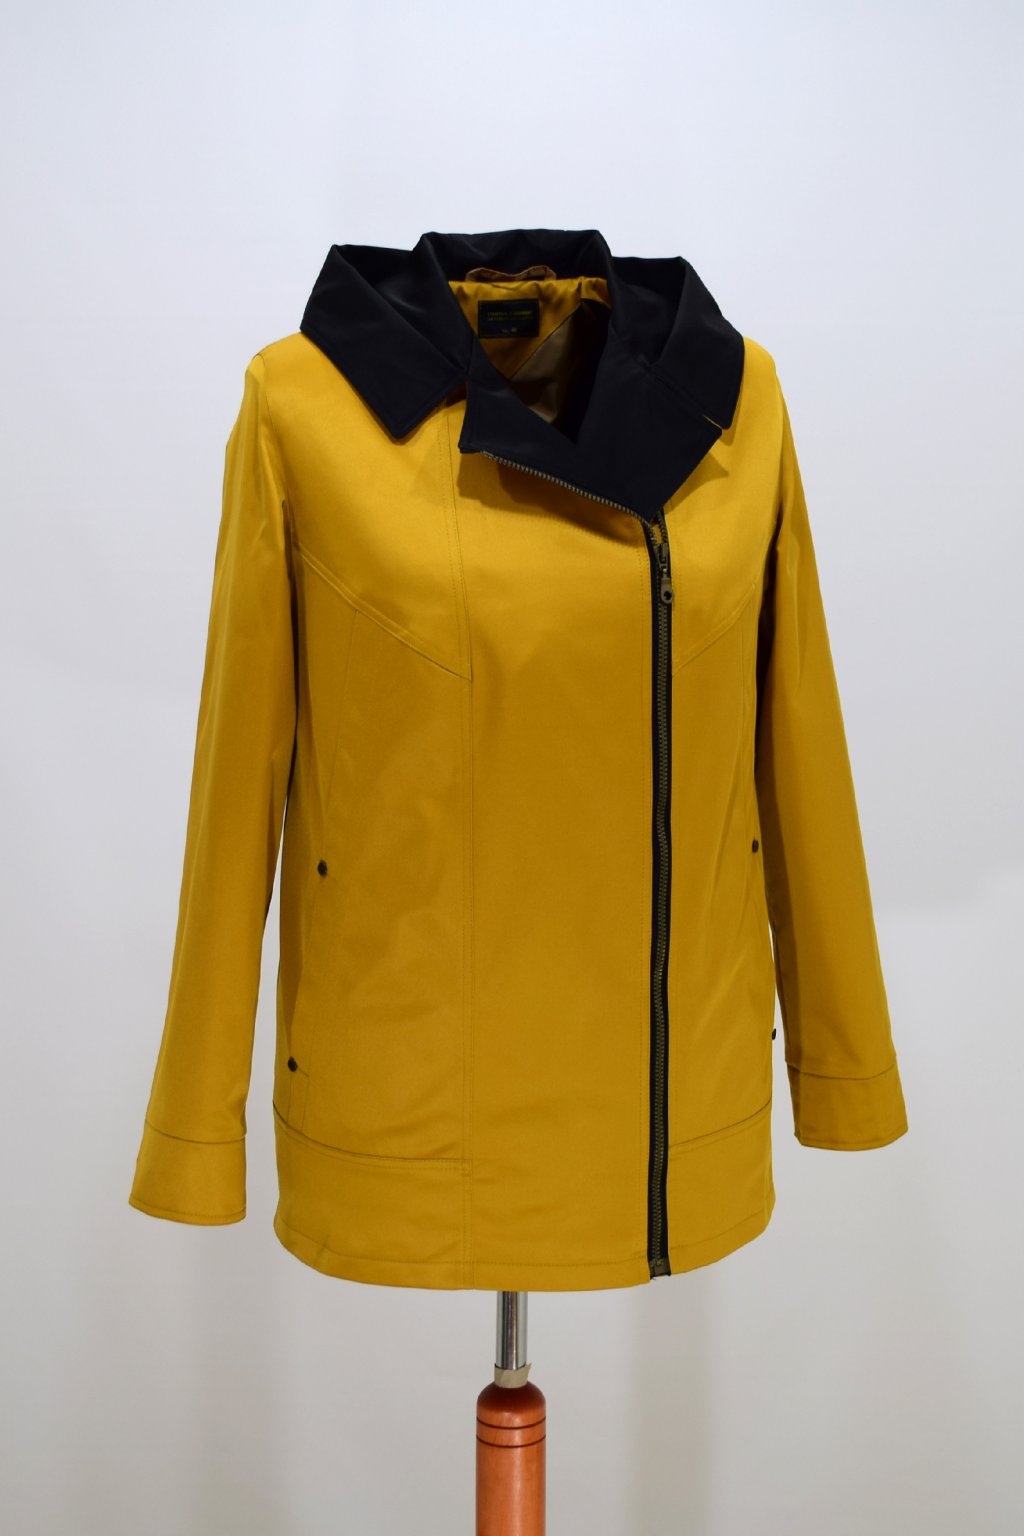 Dámská žlutá jarní bunda Marika nadměrné velikosti.